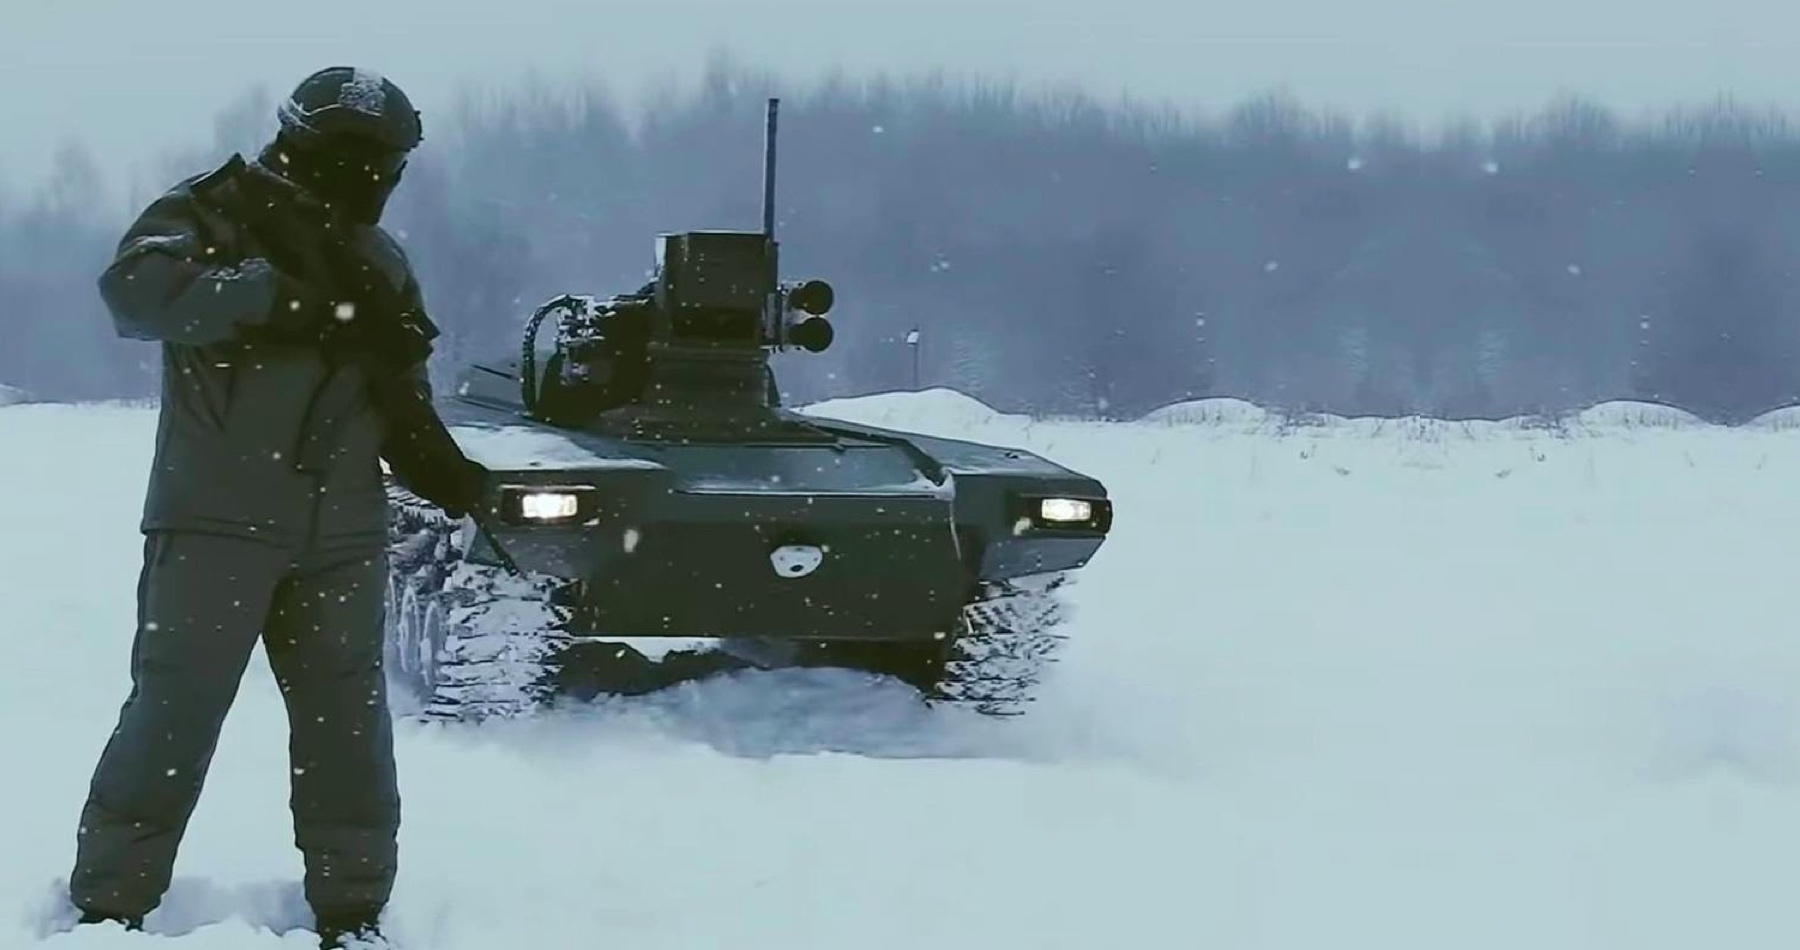 VIDEO: Rusko chce proti tankům Abrams nasadit robotické tanky. Šoková verze robota Marker, který vstoupí do zóny speciálních operací na Donbasu v únoru, bude schopna automaticky detekovat a zasáhnout ukrajinské vybavení, včetně amerických tanků Abrams a německých tanků Leopard